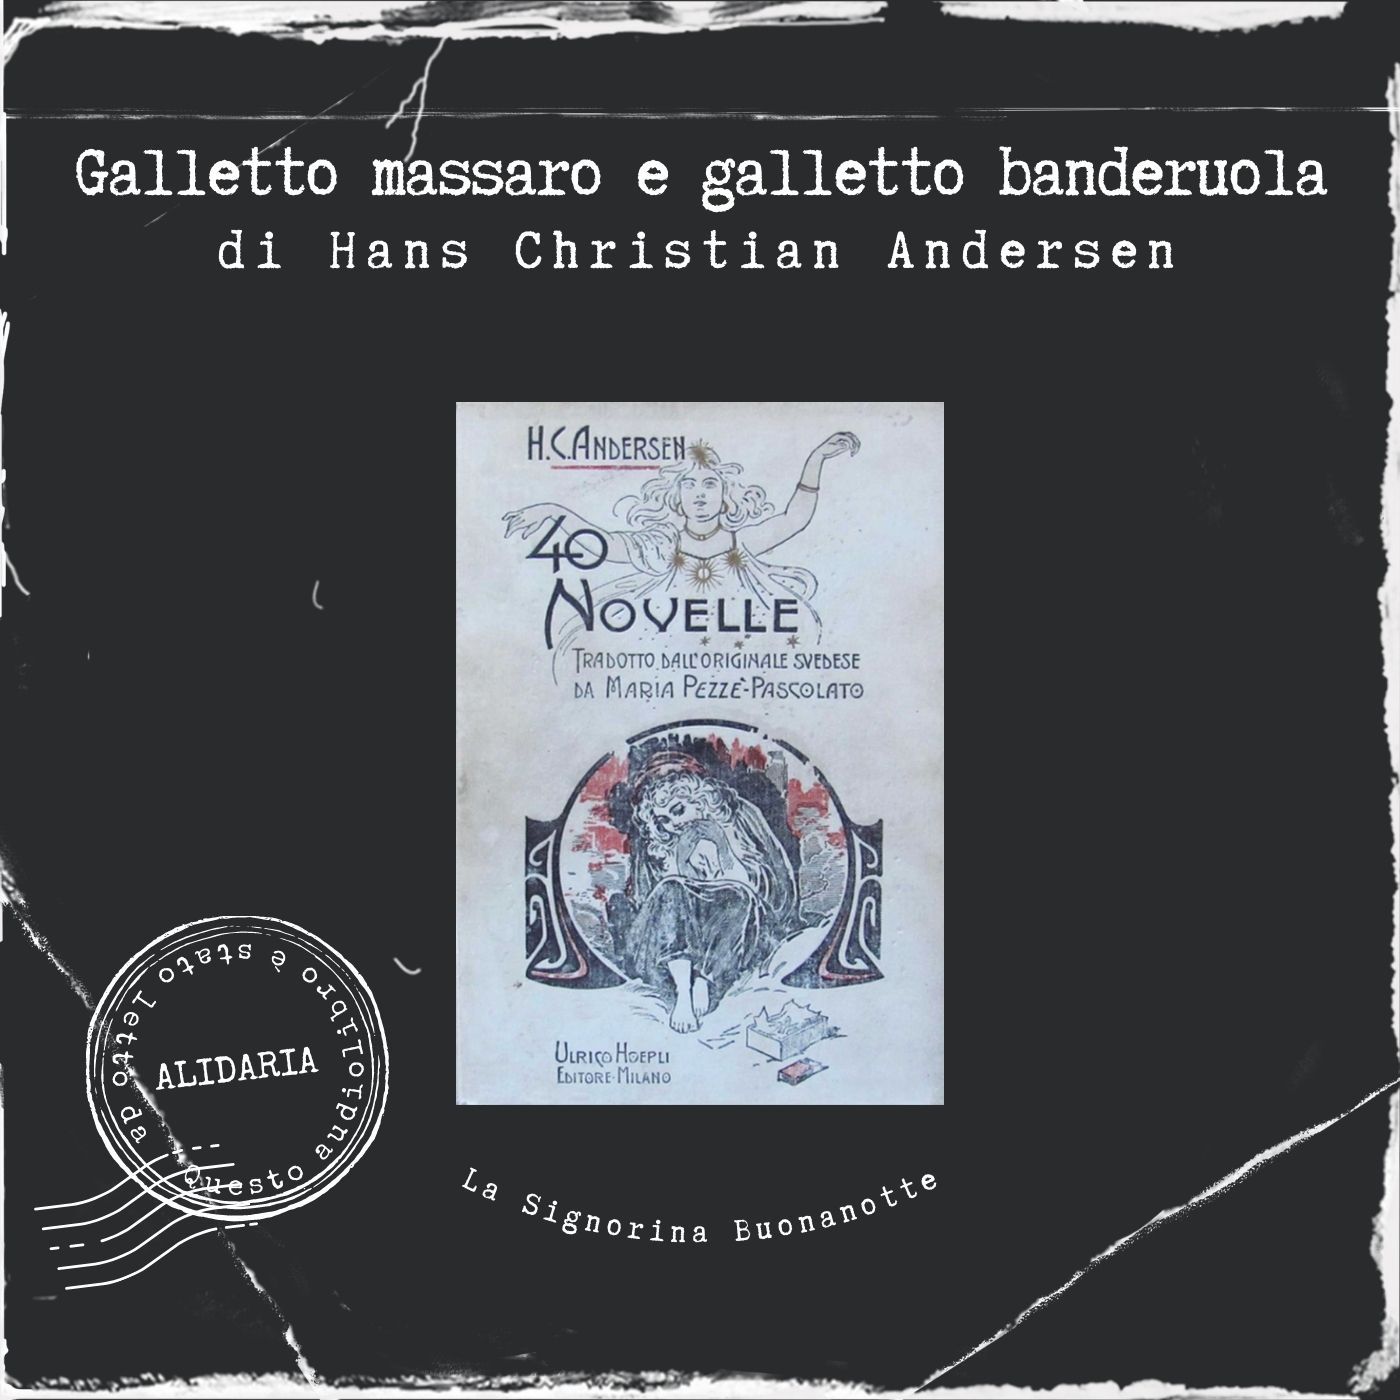 Galletto massaro e galletto banderuola: l'audiolibro delle novelle di Andersen